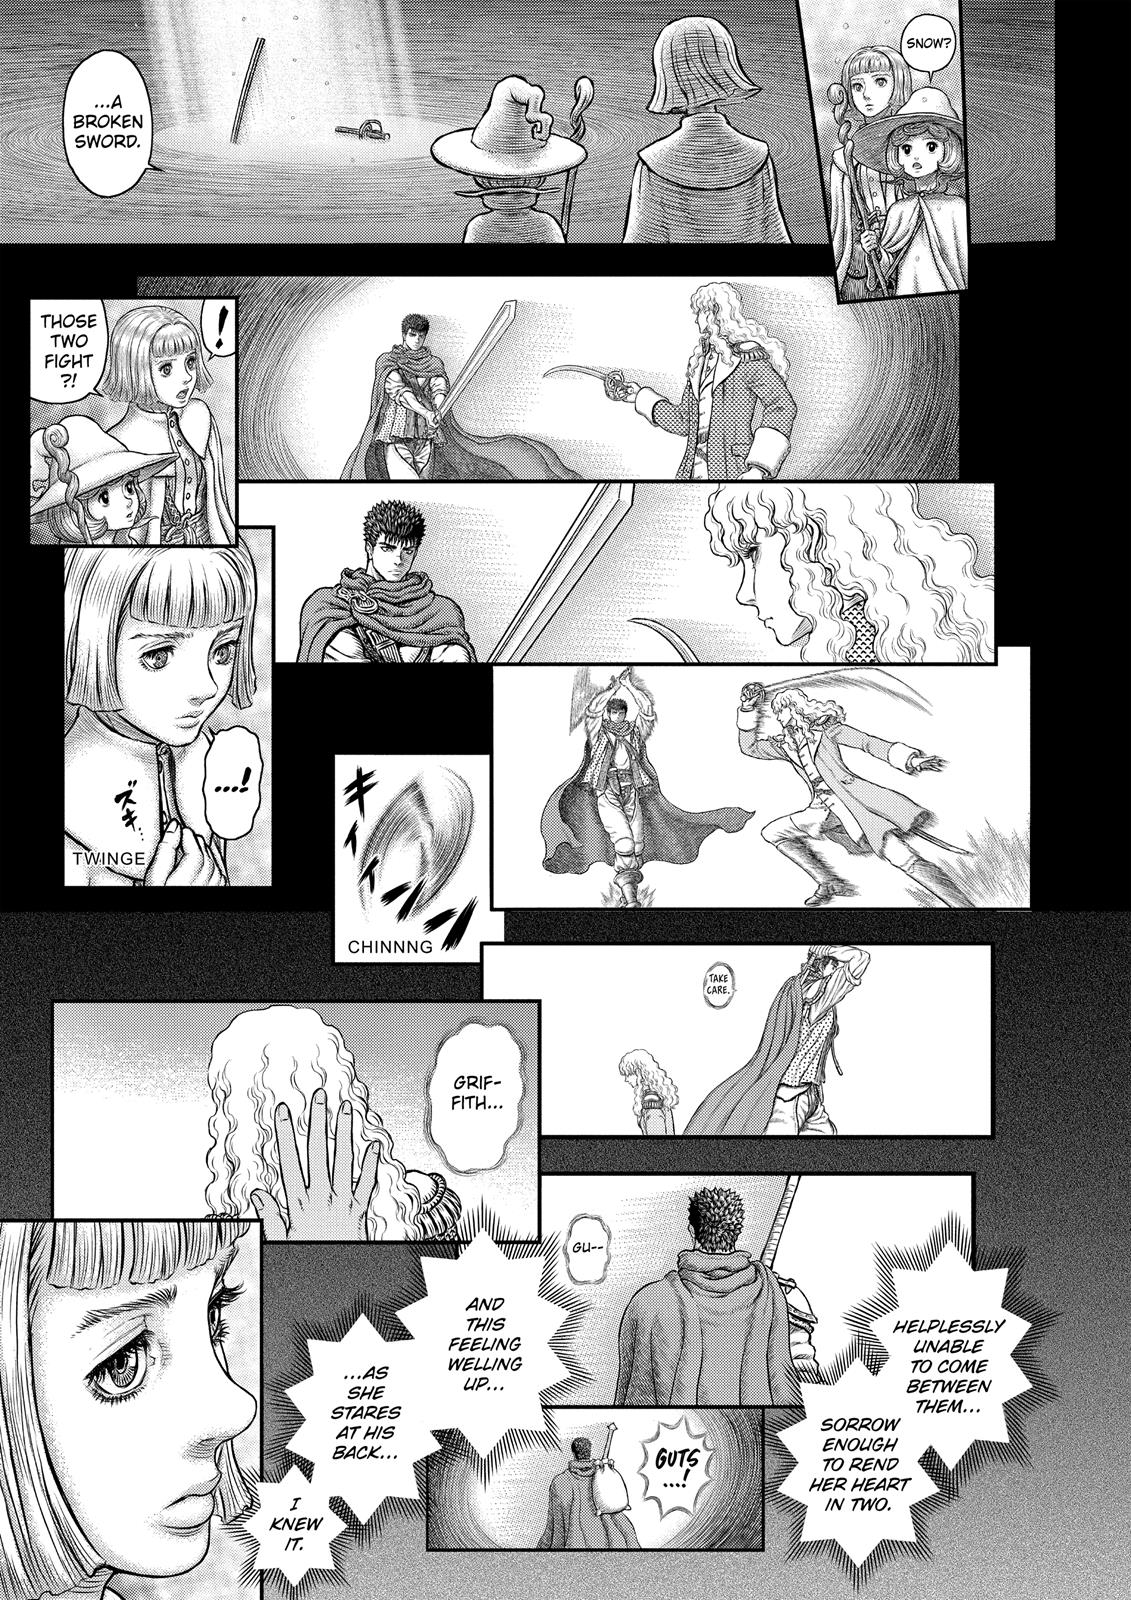 Berserk Manga Chapter 350 image 10